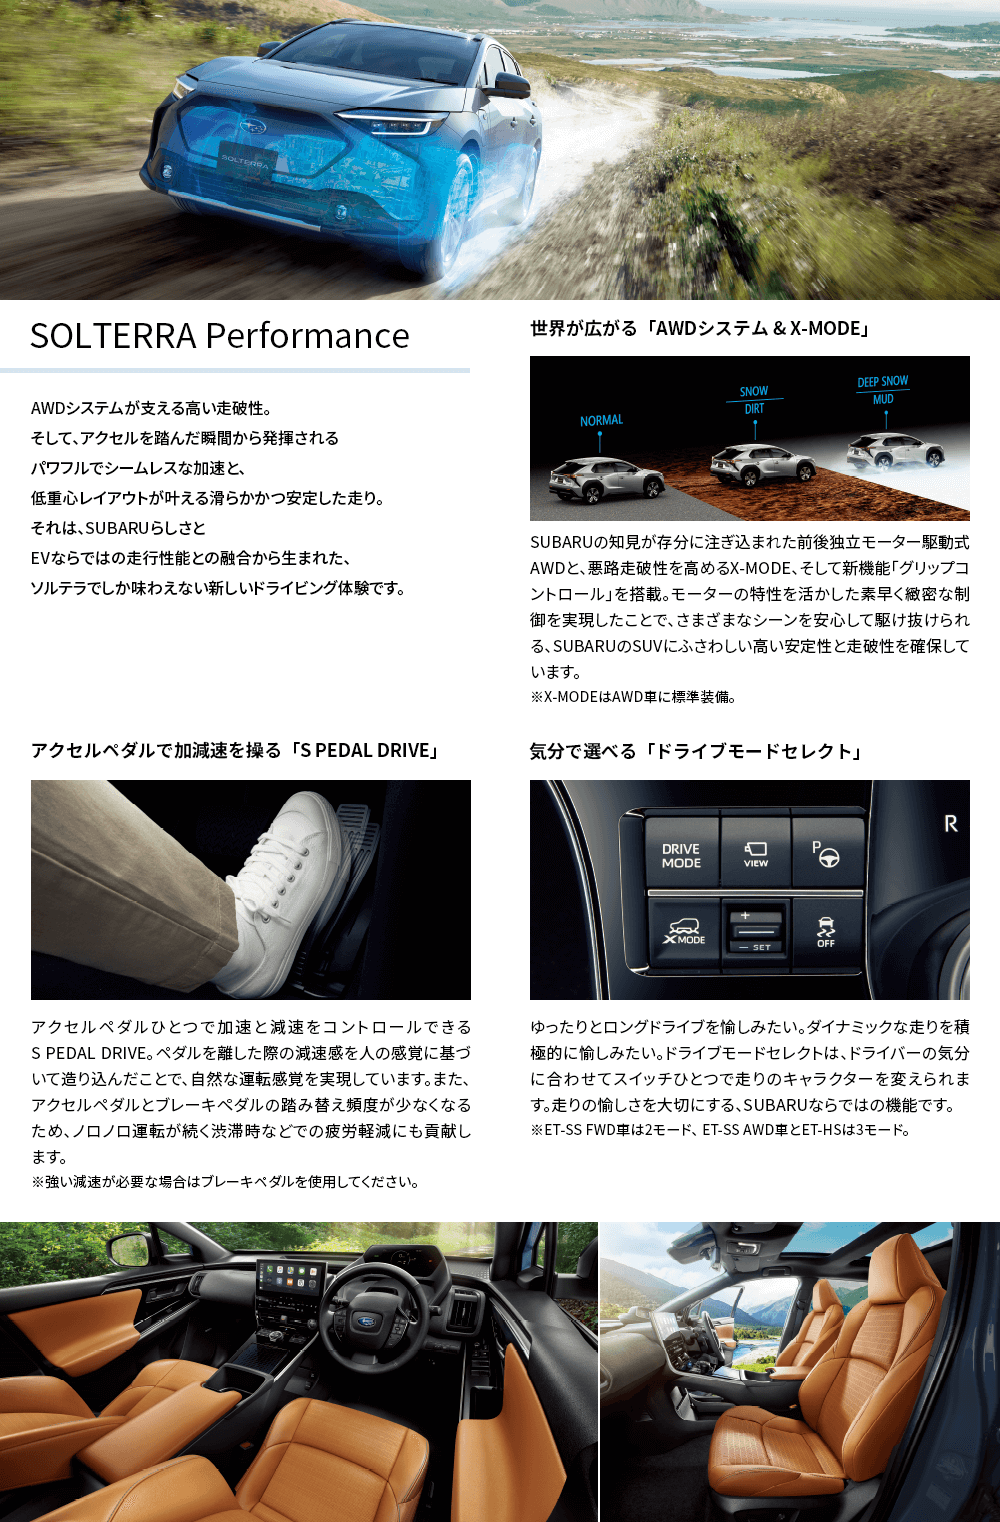 SOLTERRA Performance アクセルペダルで加減速を操る「S PEDAL DRIVE」 気分で選べる「ドライブモードセレクト」